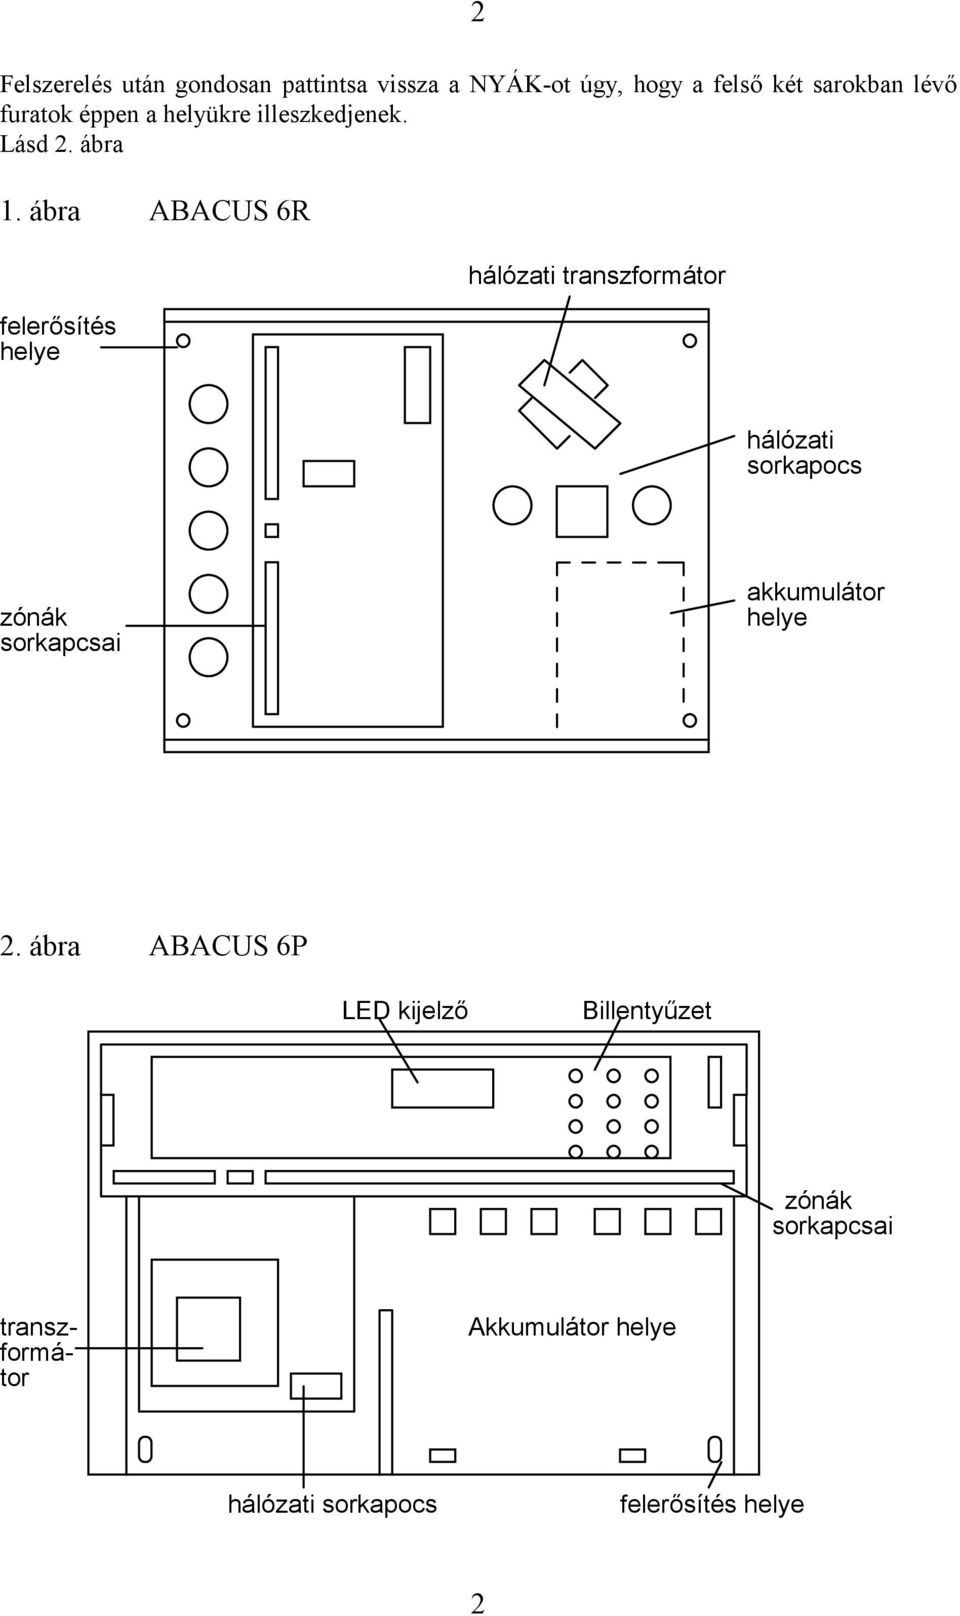 ábra ABACUS 6R felerősítés helye hálózati transzformátor hálózati sorkapocs zónák sorkapcsai